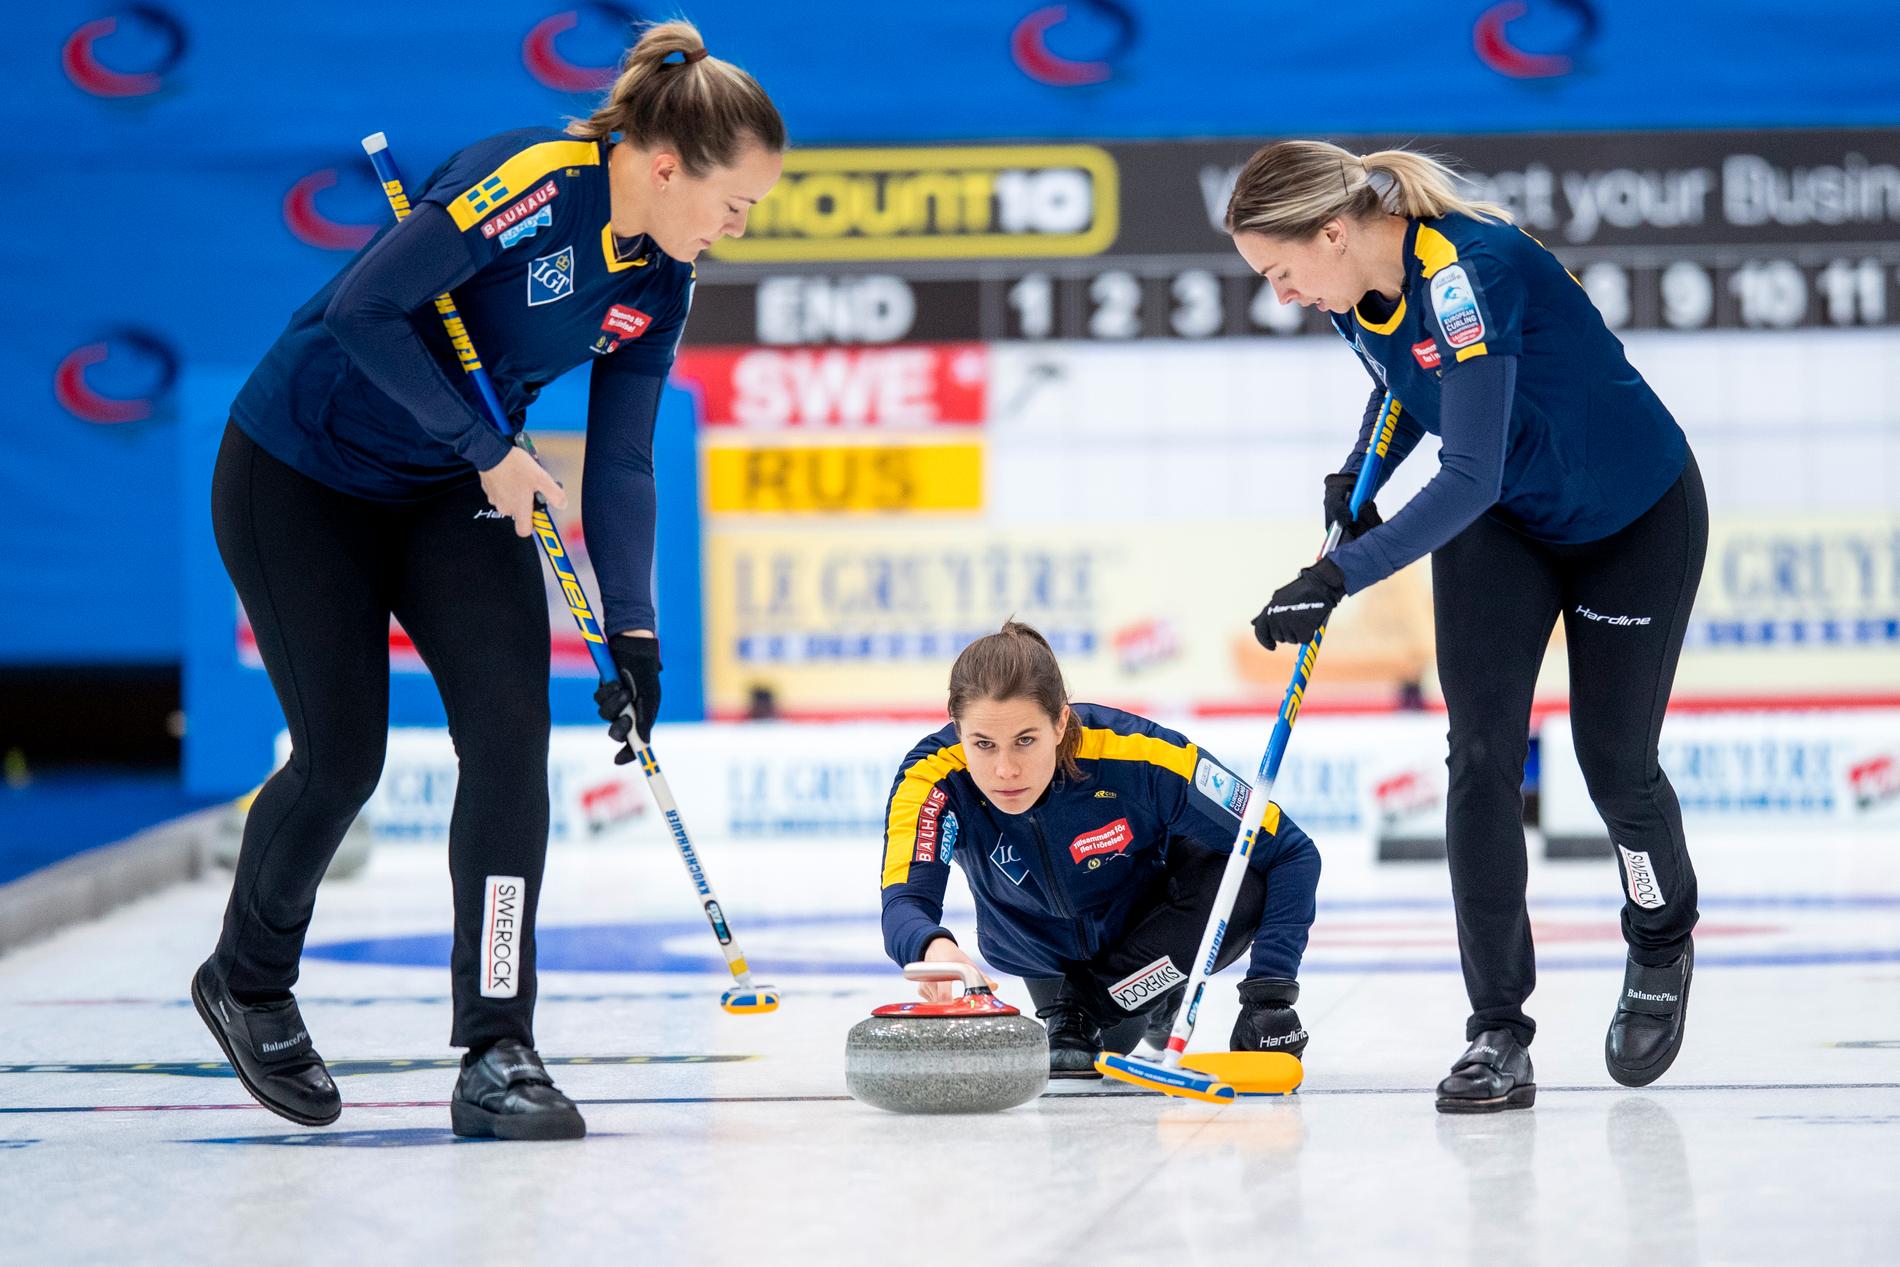 Curlinglandslaget, med skippern Anna Hasselborg, är ett av Sveriges guldhopp i vinter-OS. Arkivbild.